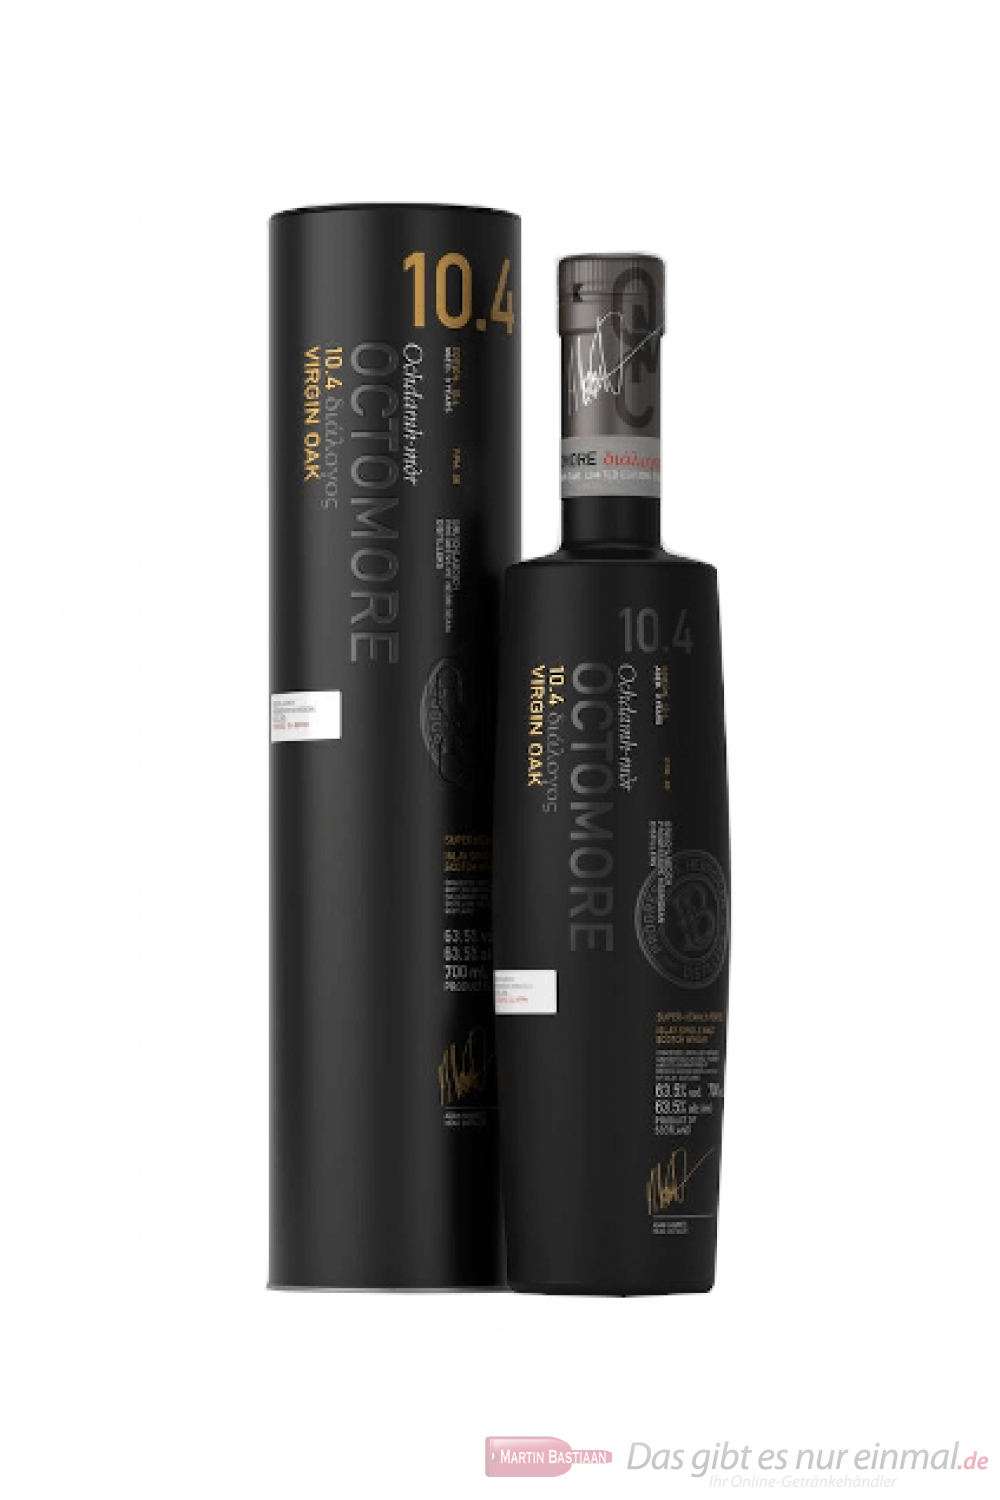 Bruichladdich Octomore 10.4 Islay Single Malt Scotch Whisky 0,7l